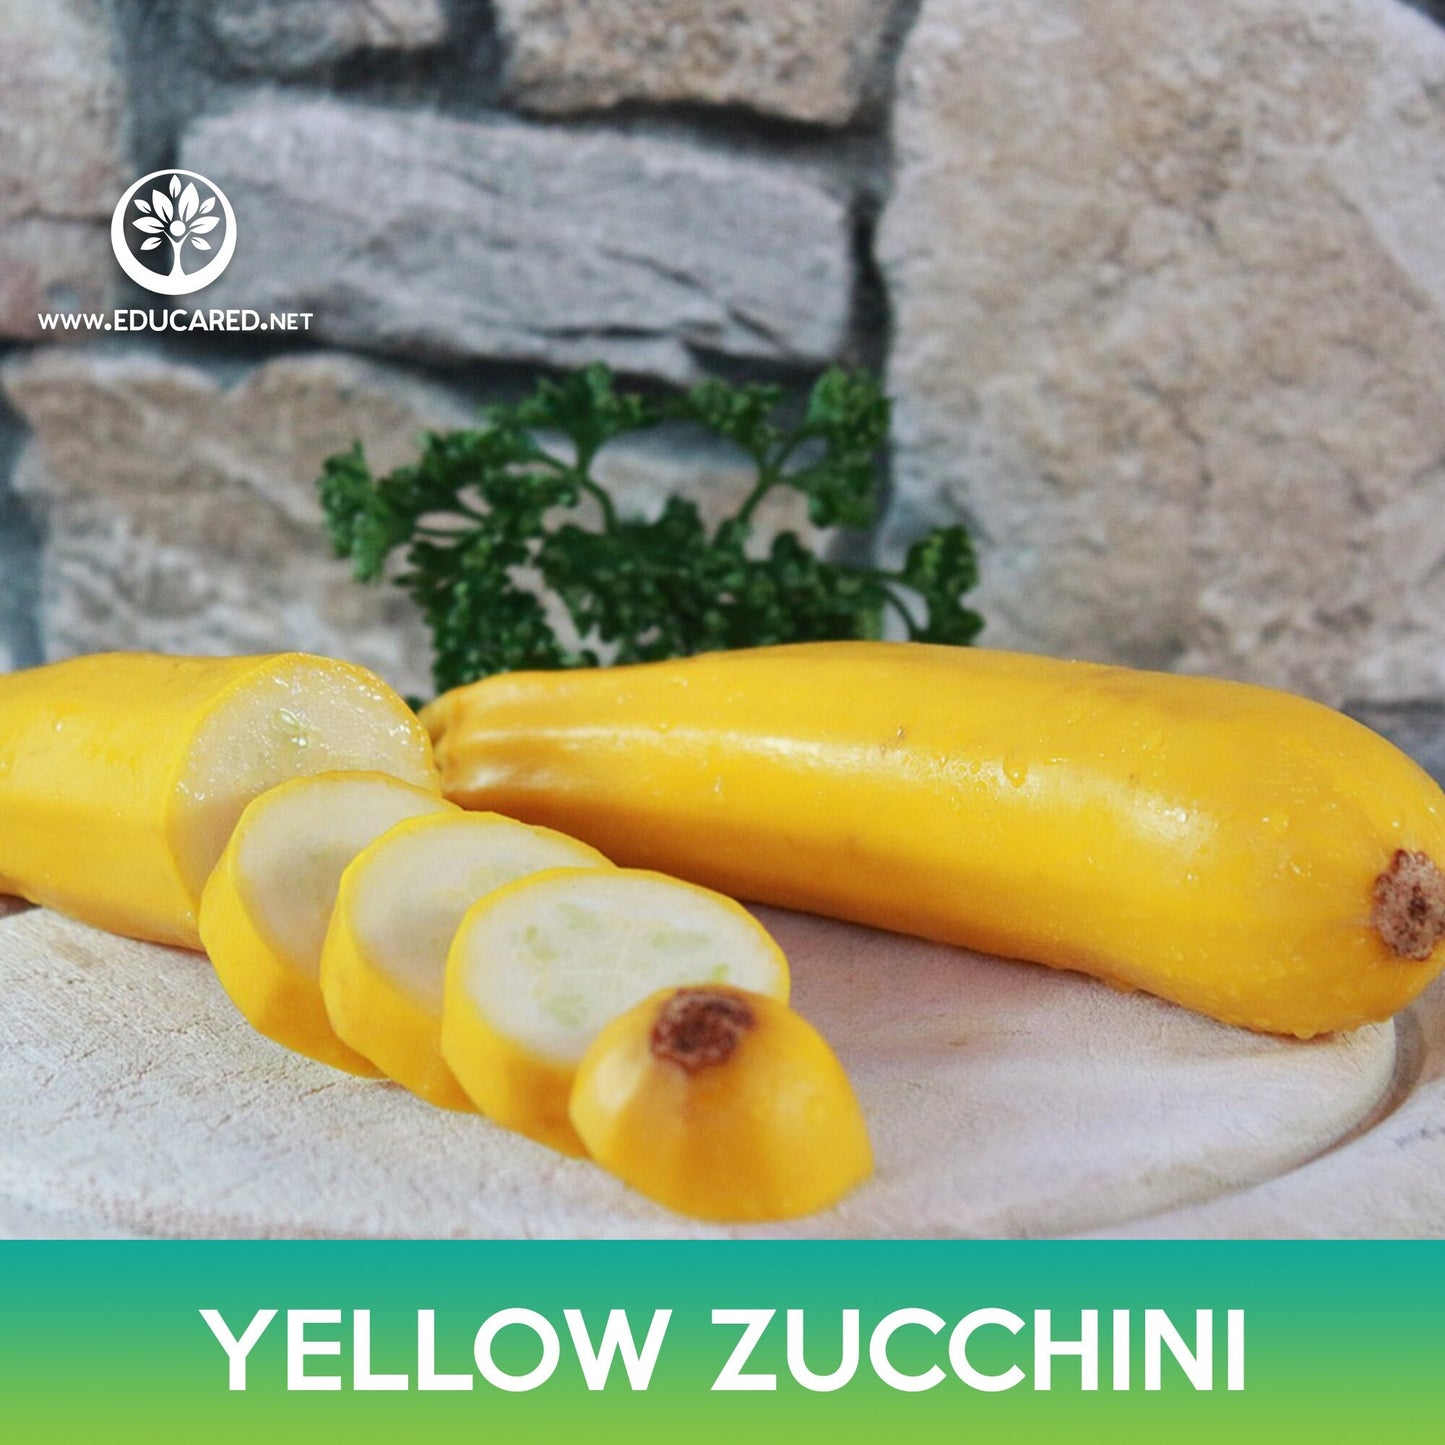 Yellow Zucchini Seeds